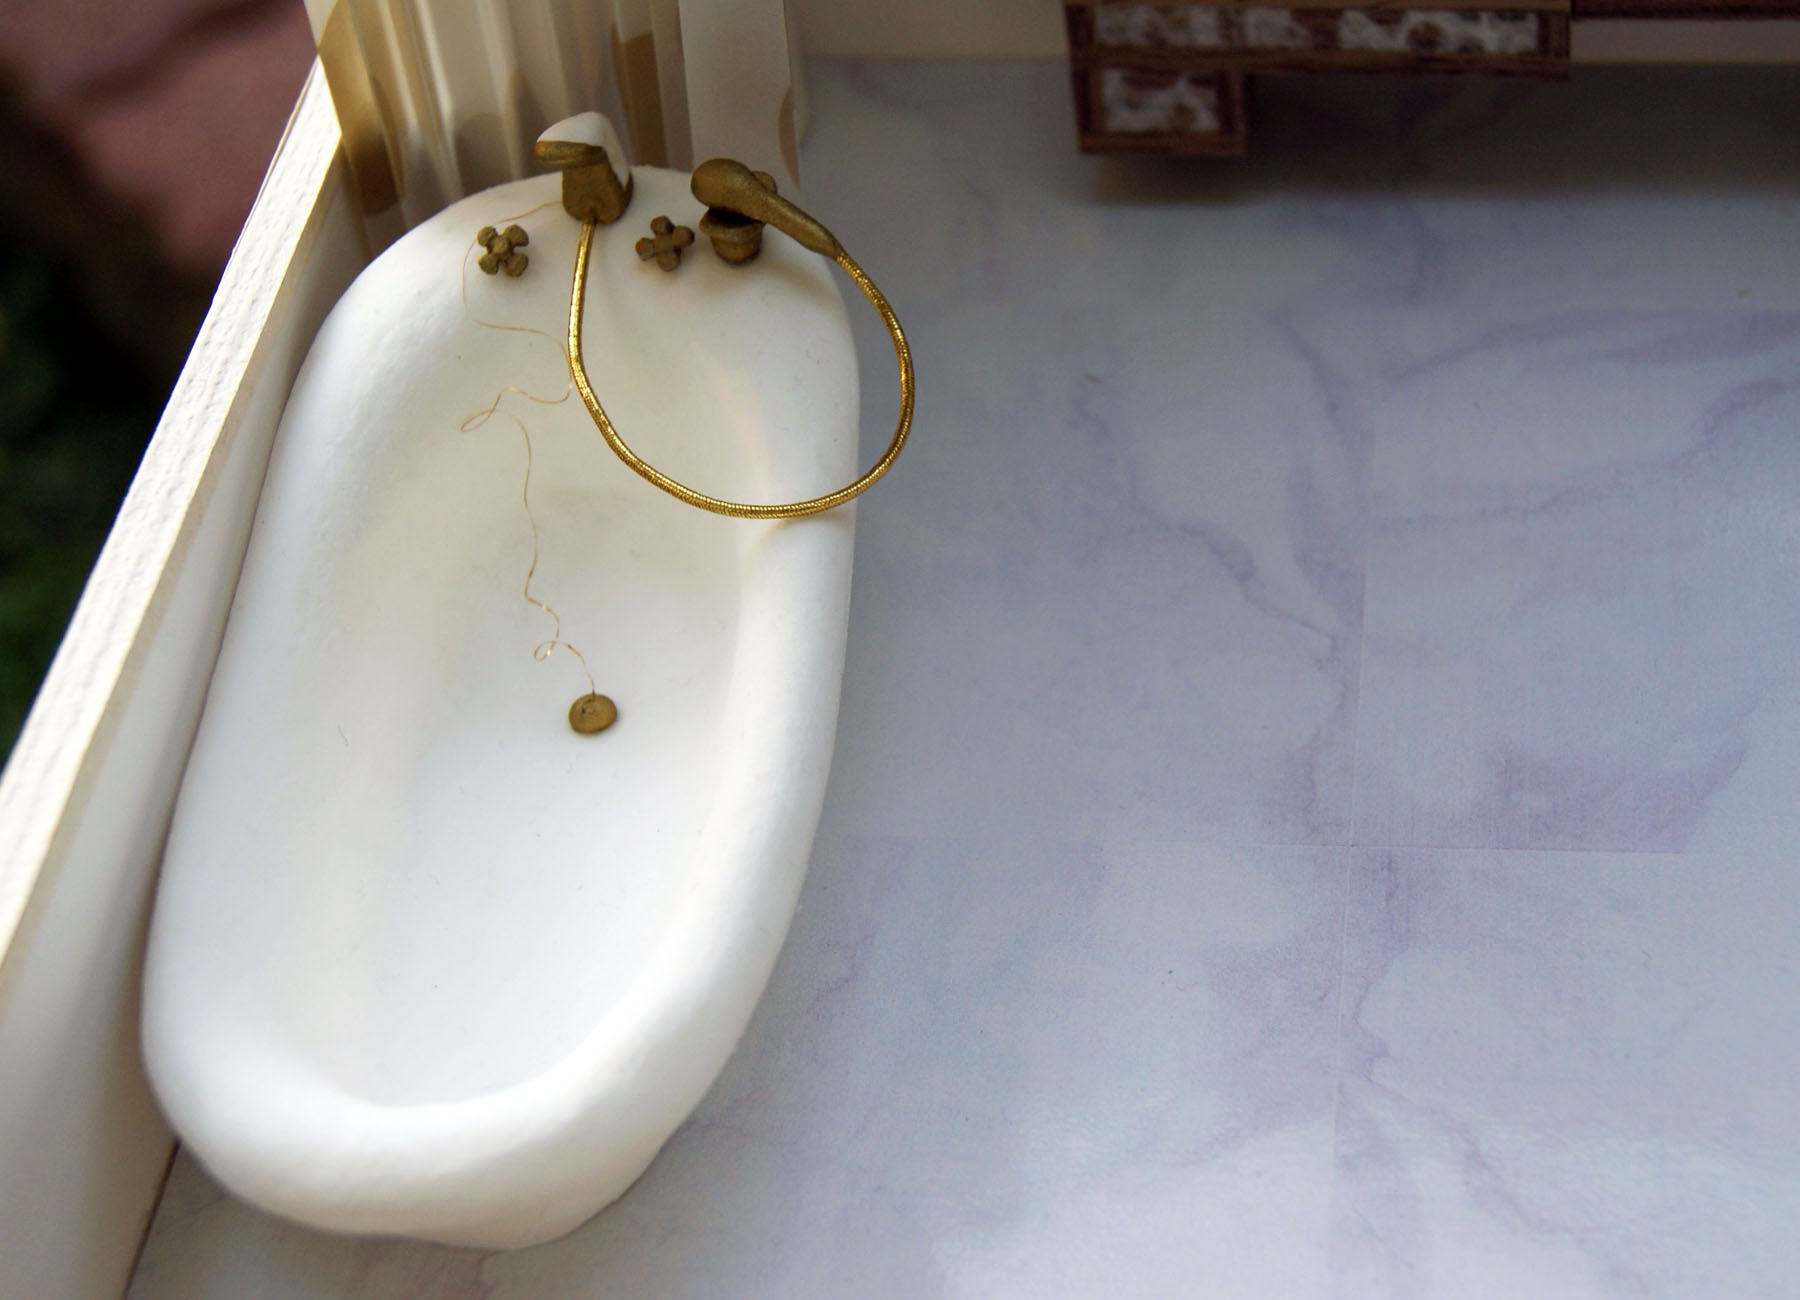 紙紮古典搪瓷浴缸